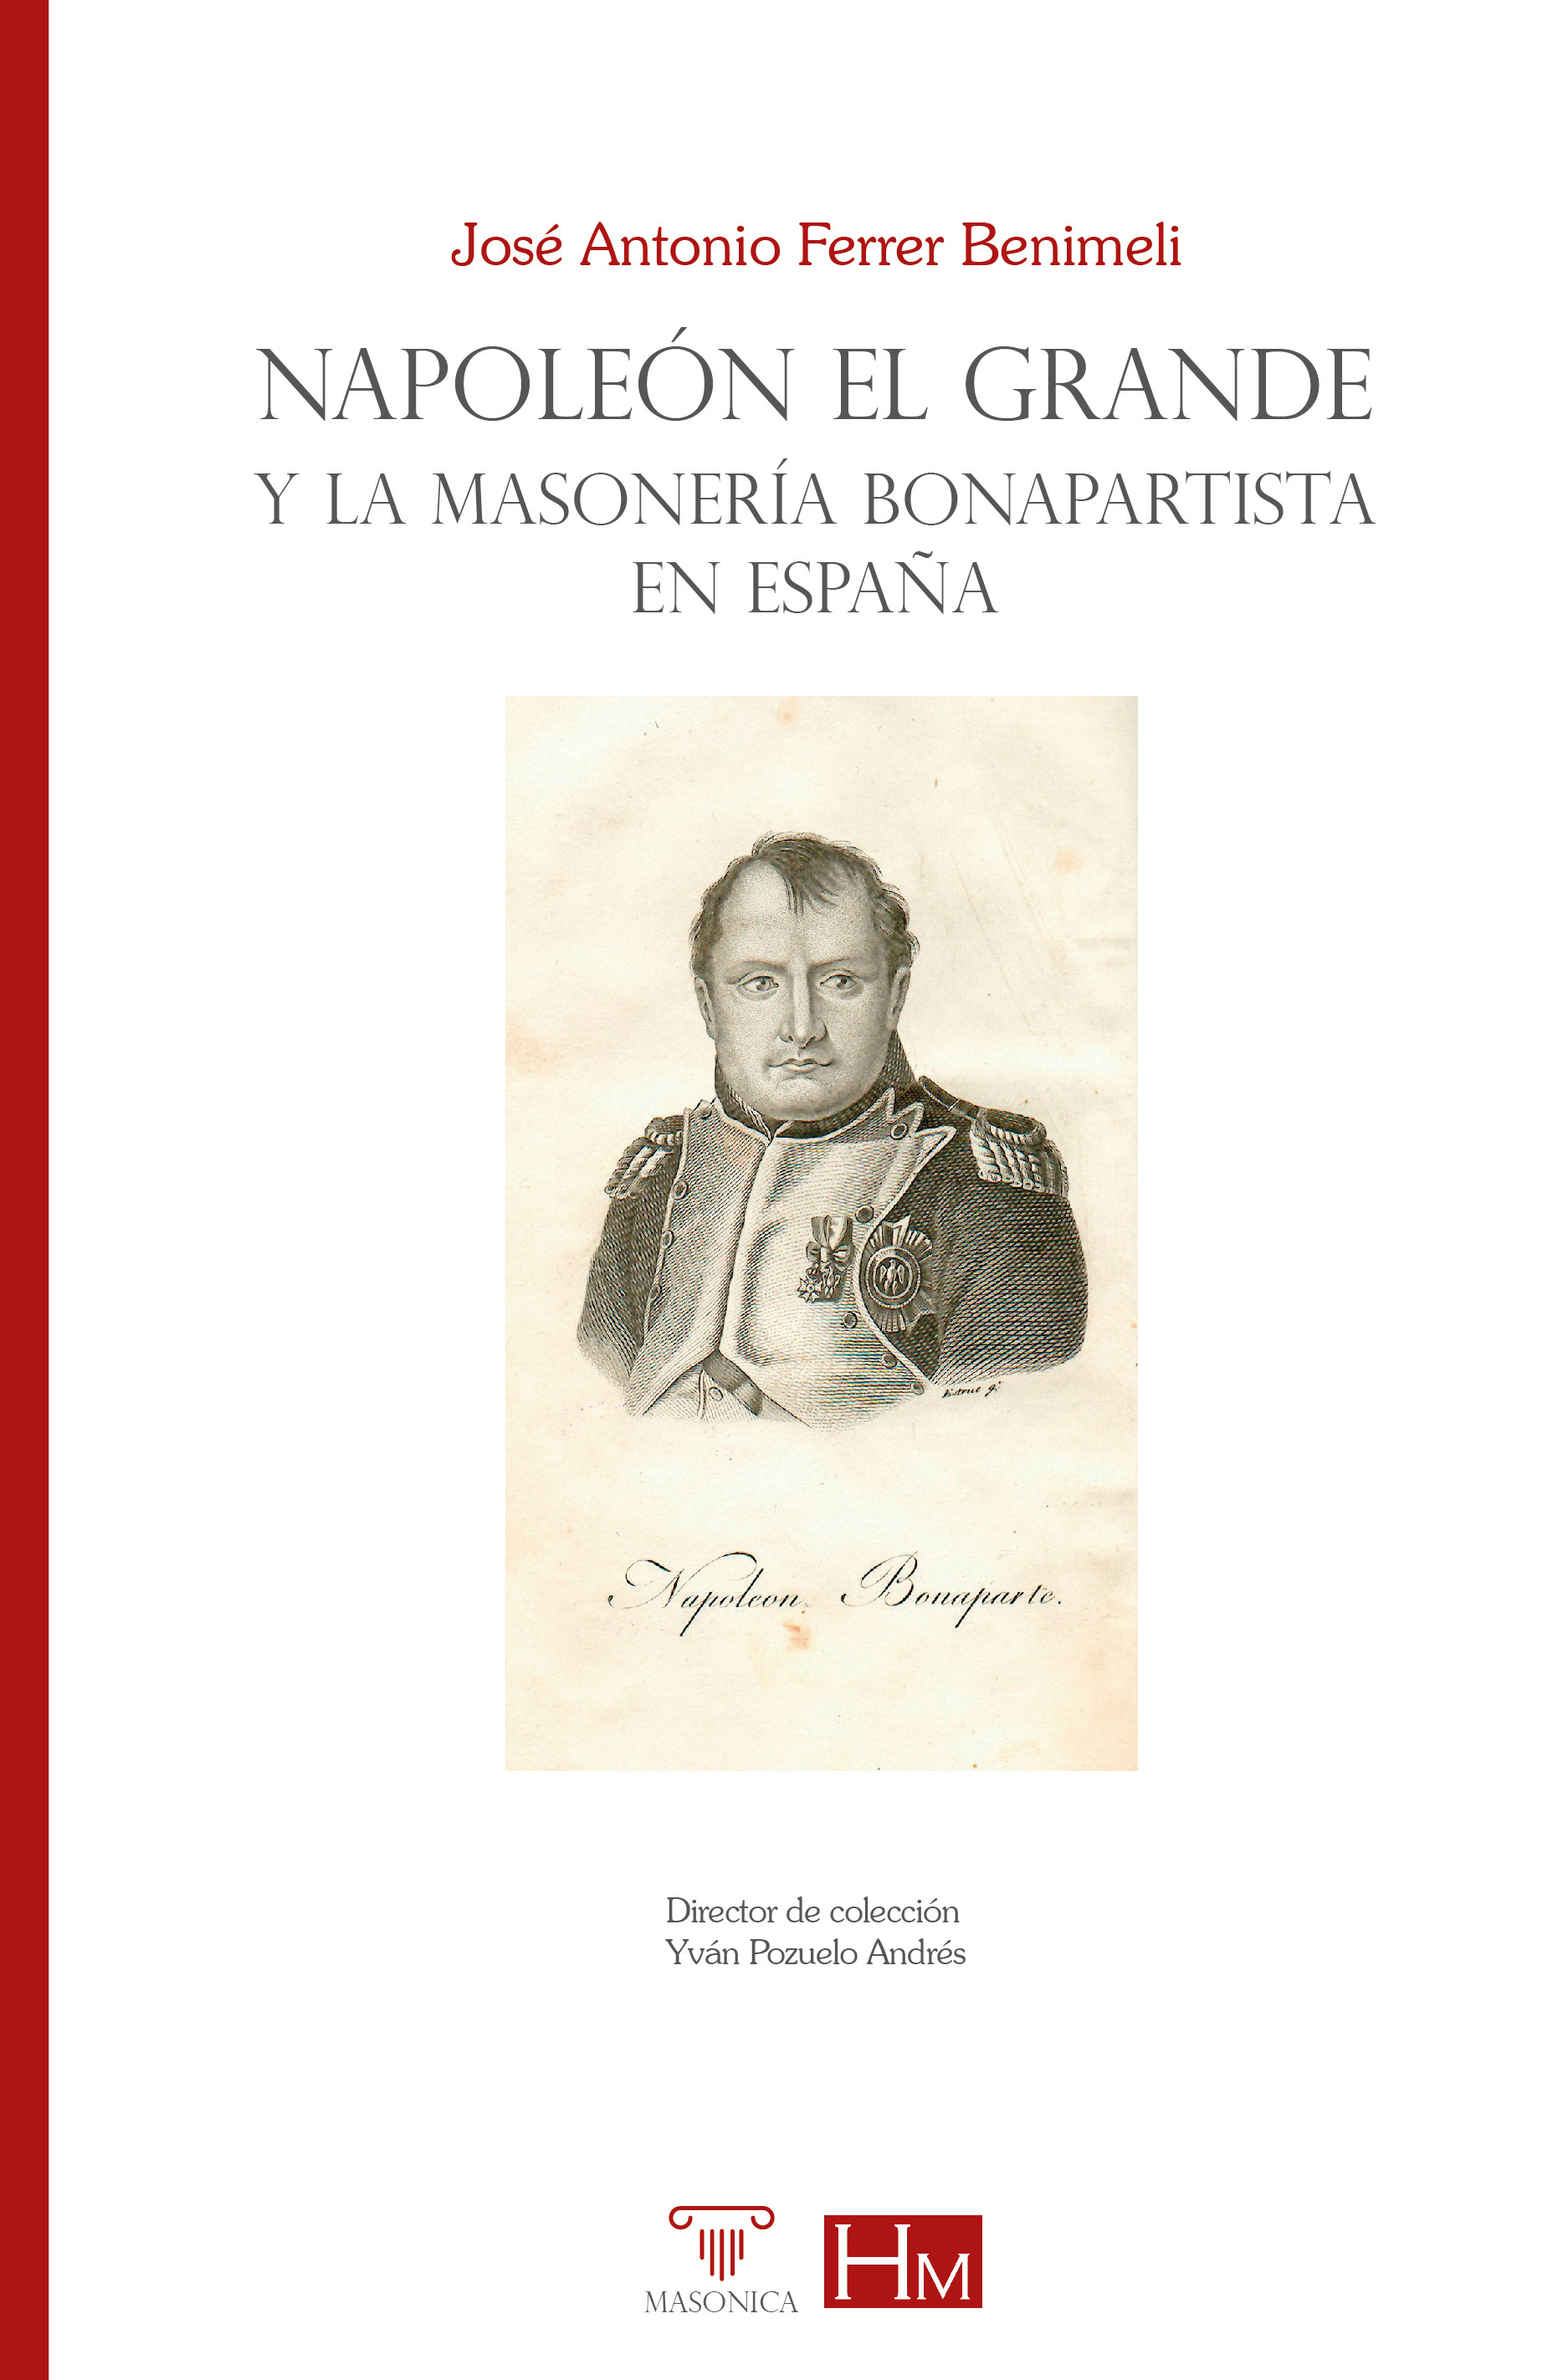 Imagen de portada del libro Napoleón el Grande y la masonería bonapartista en España